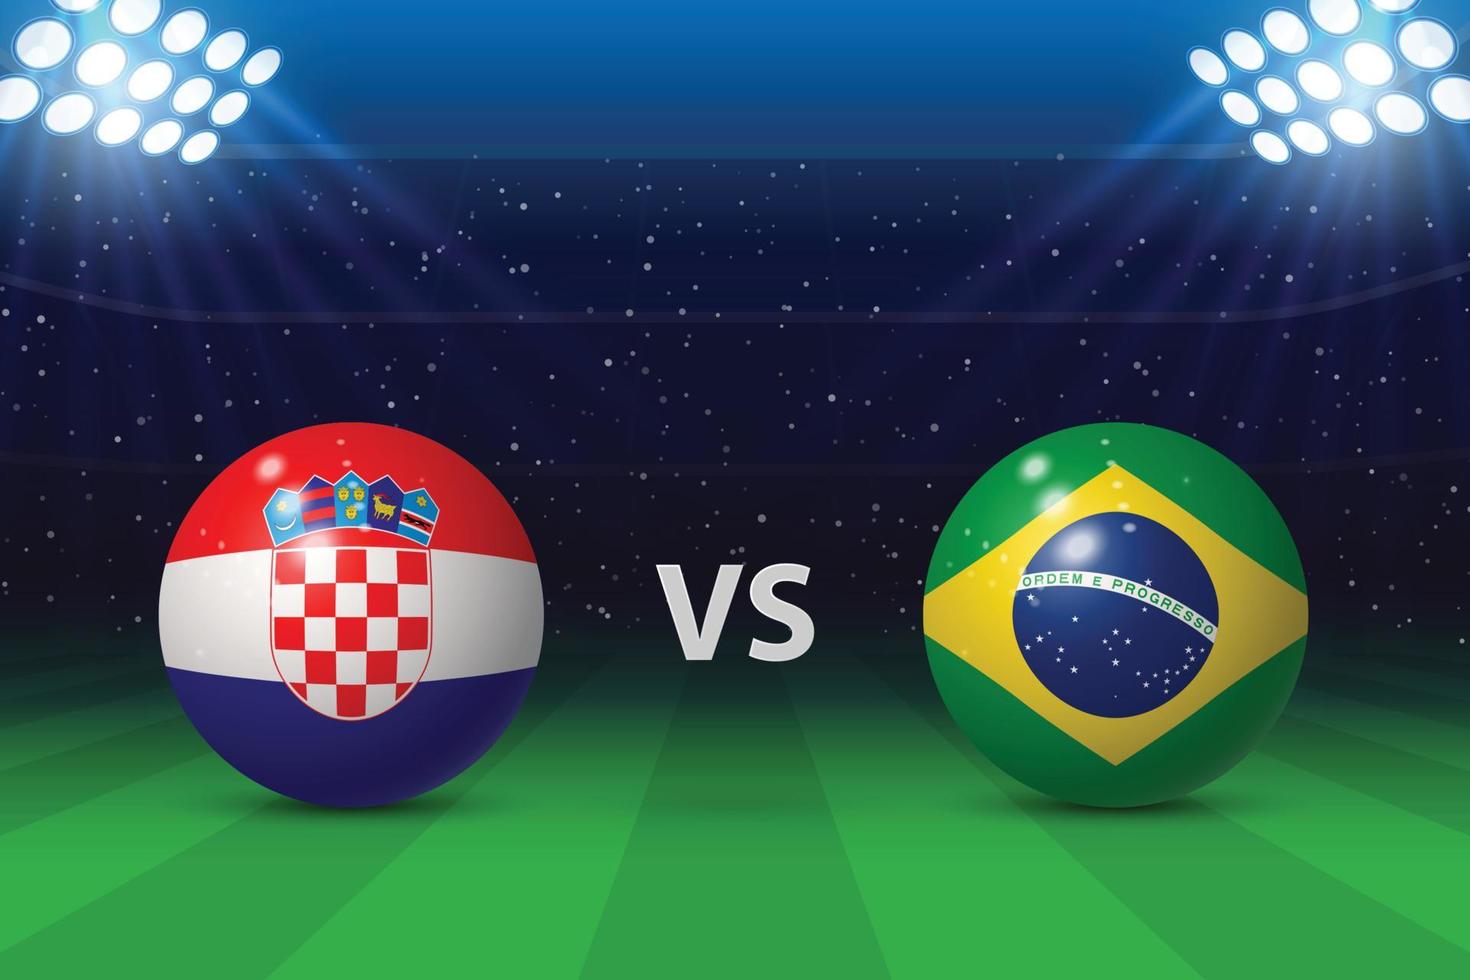 Croatia vs Brazil. Football scoreboard broadcast graphic vector